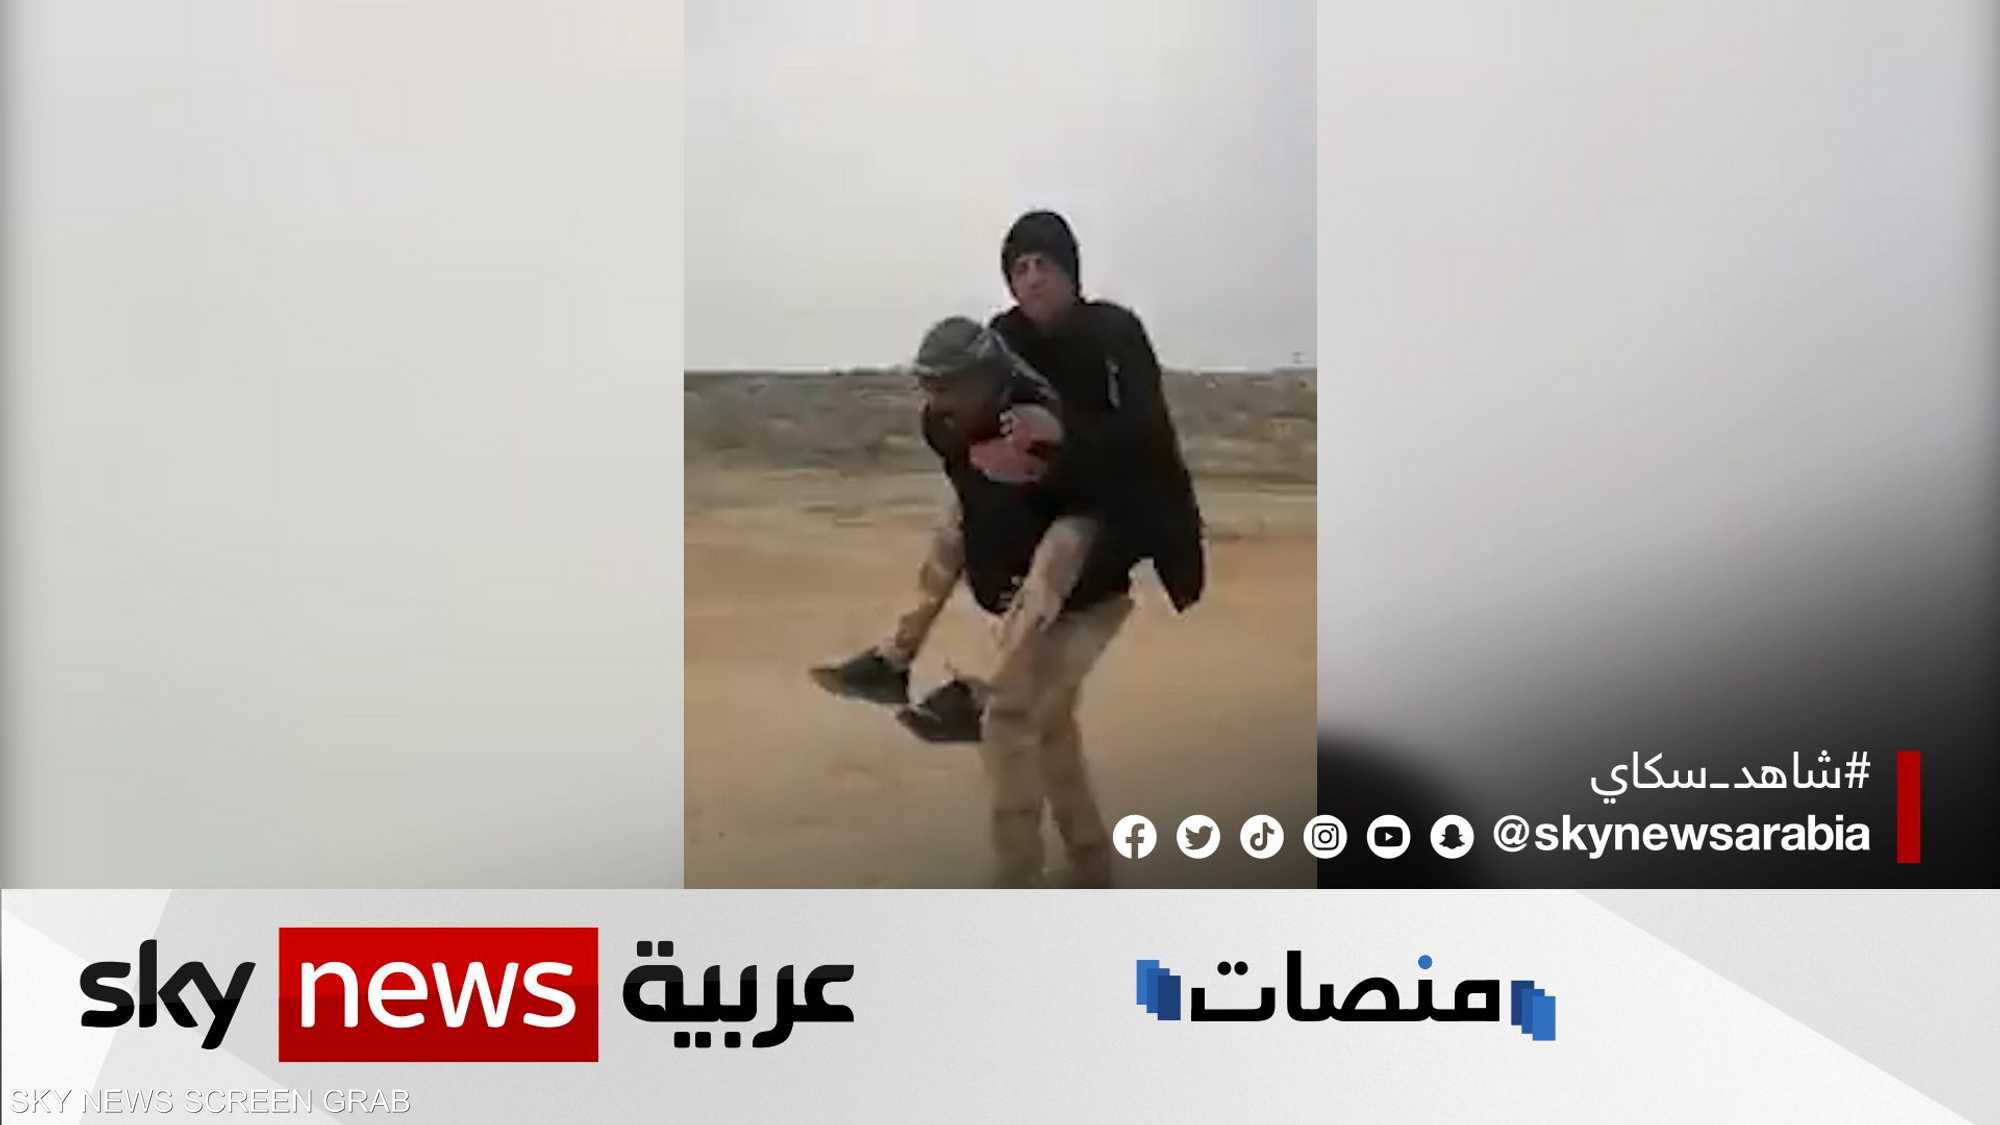 فيديو مسرب لجنود عراقيين يثير الغضب في البلاد